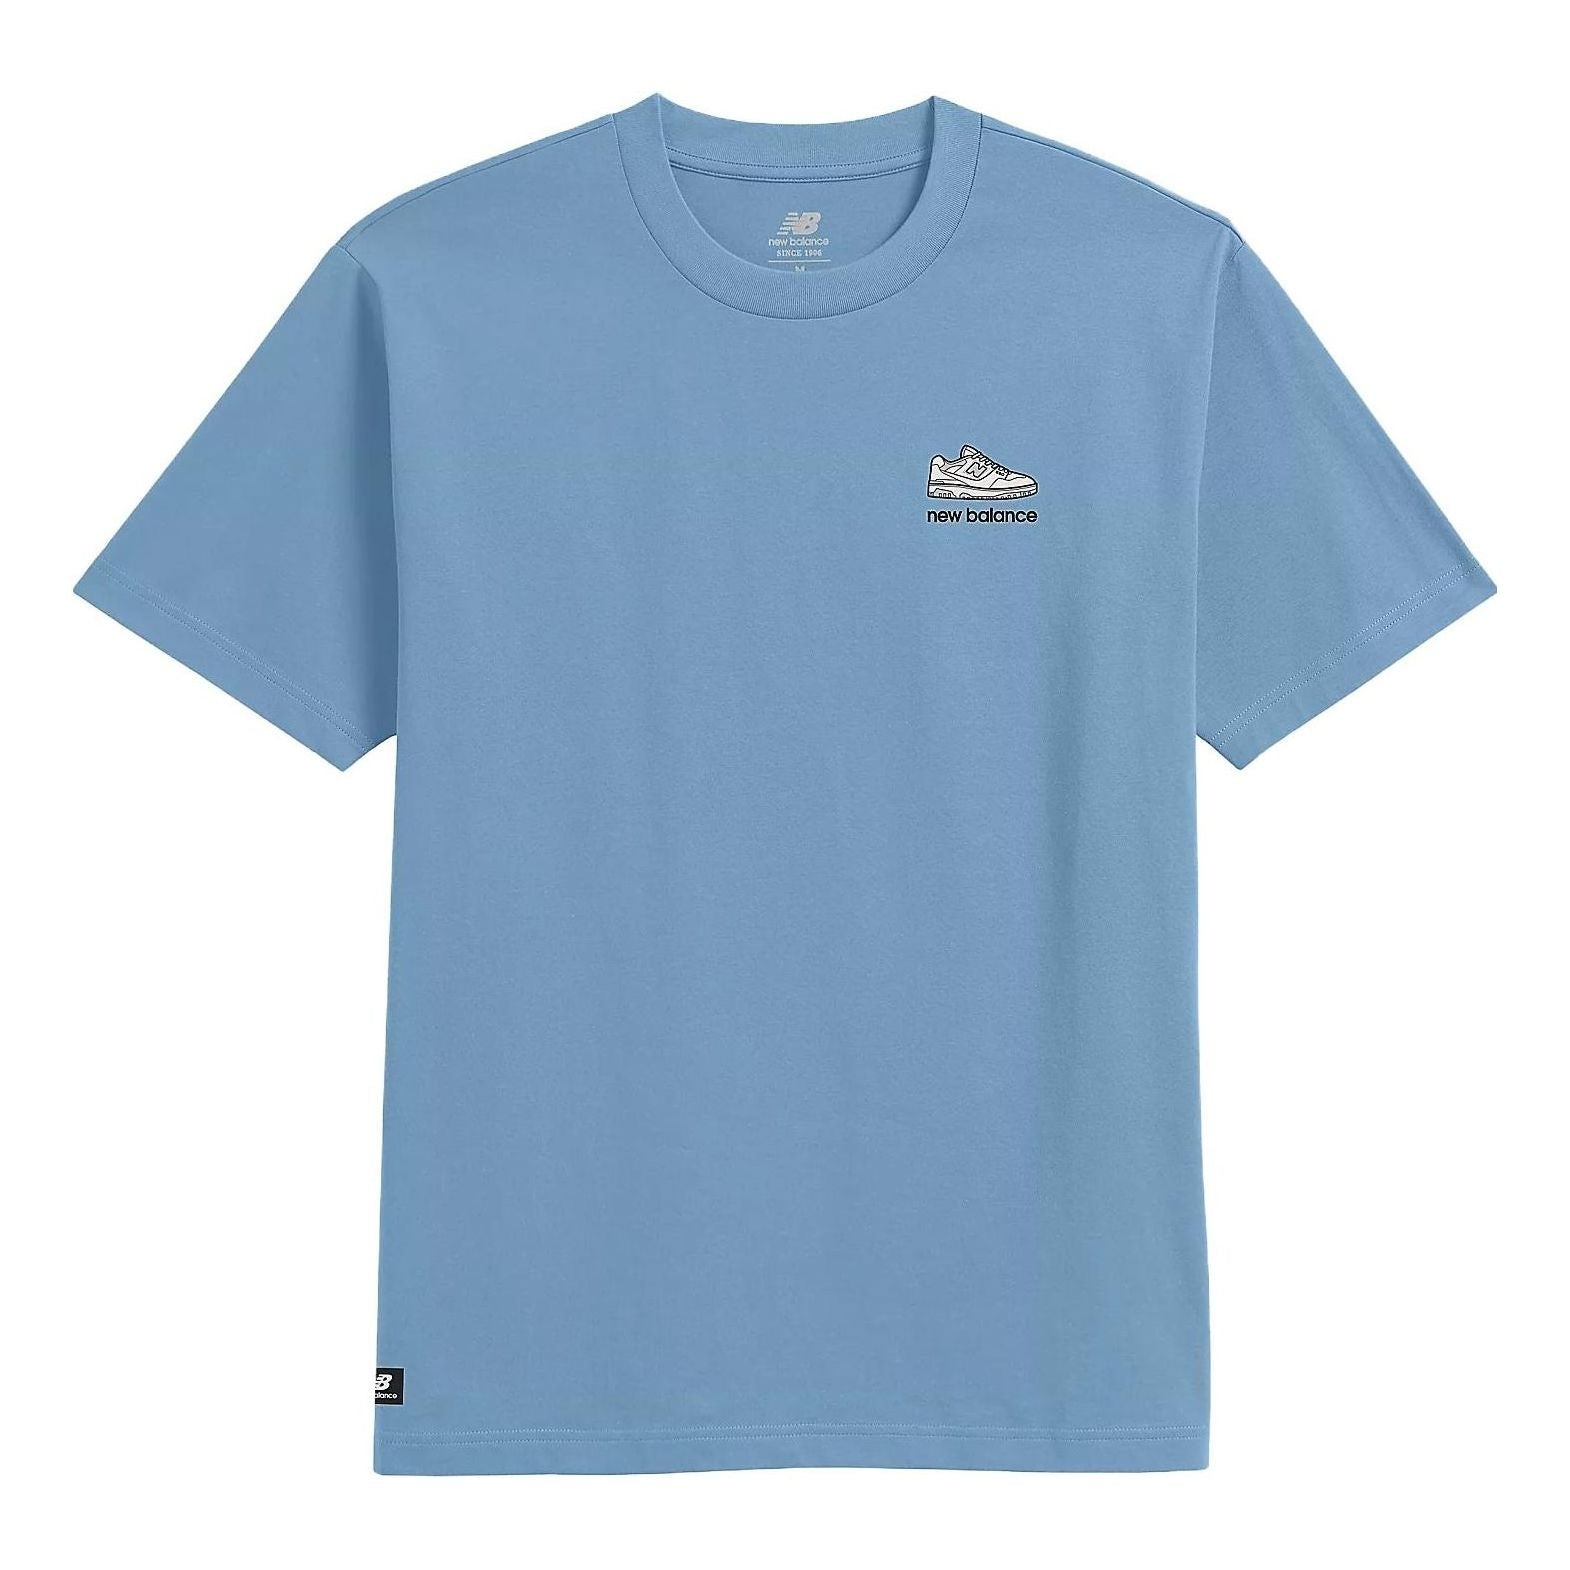 New Balance 550 Graphic Short Sleeve T-shirt 'Light Blue' MT31576-BLZ - 1